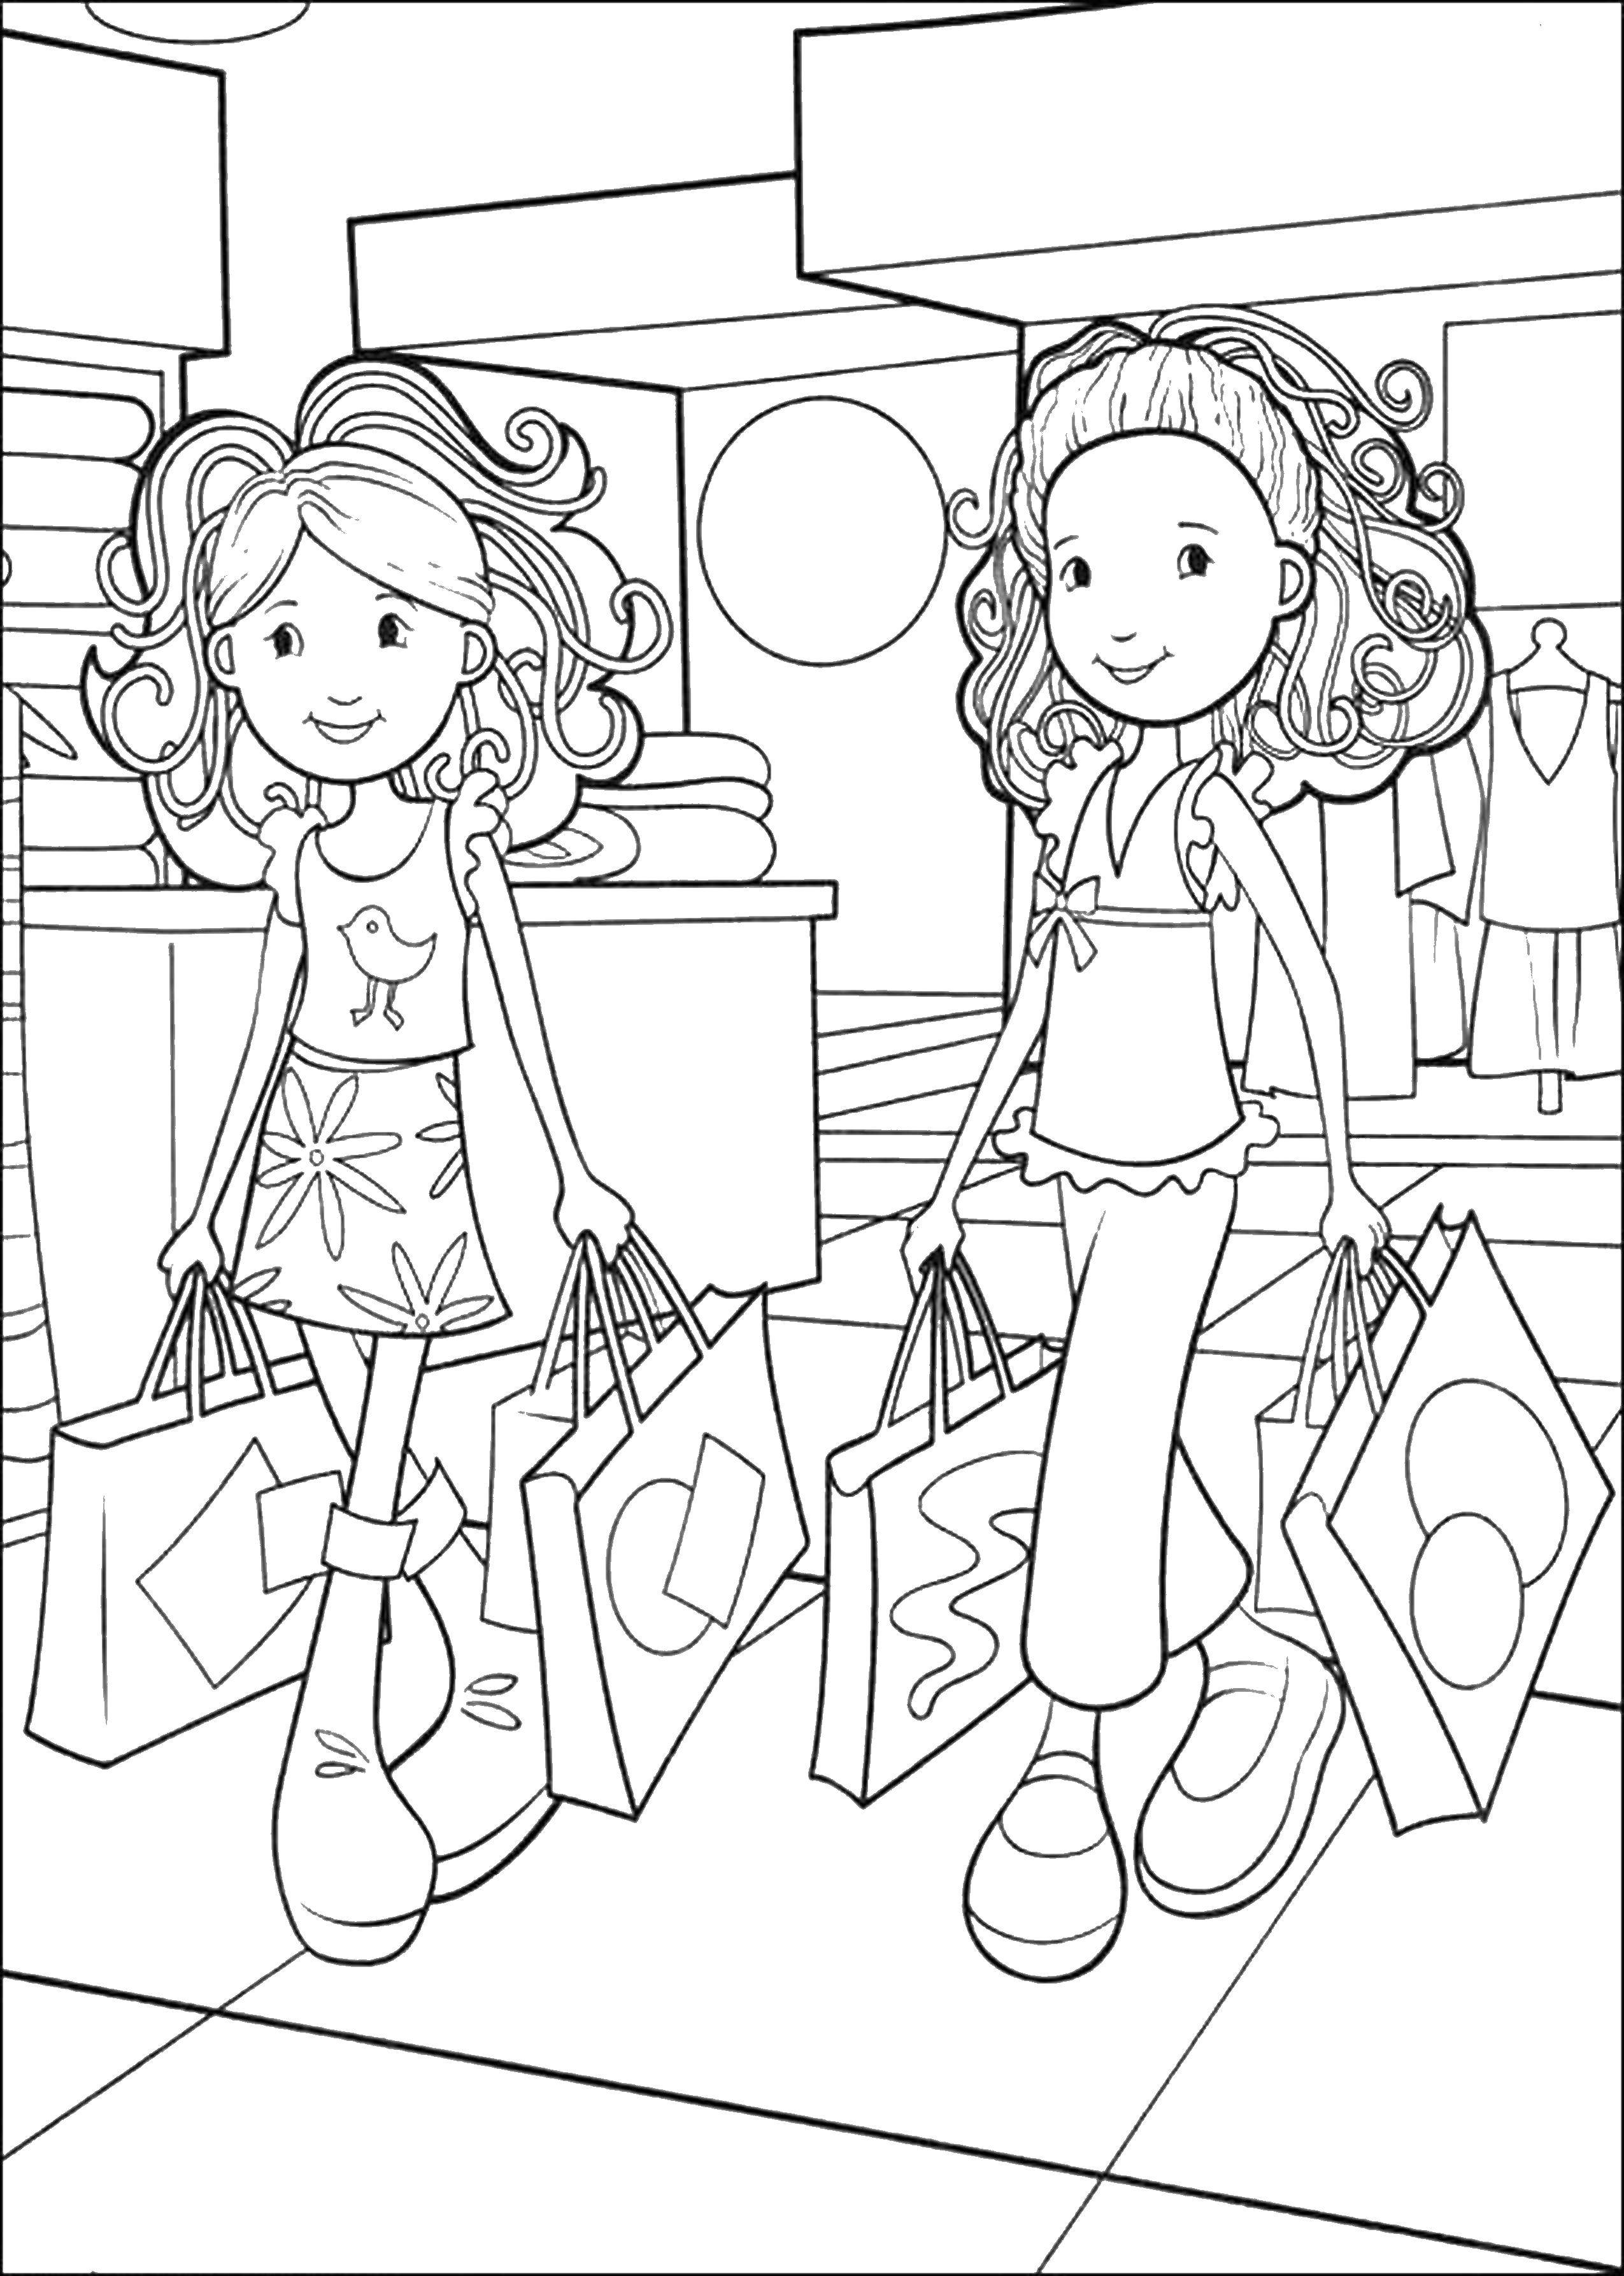 Название: Раскраска Две подруги в магазине с покупками. Категория: раскраски для девочек. Теги: девочки, шоппинг, подружки, магазин.